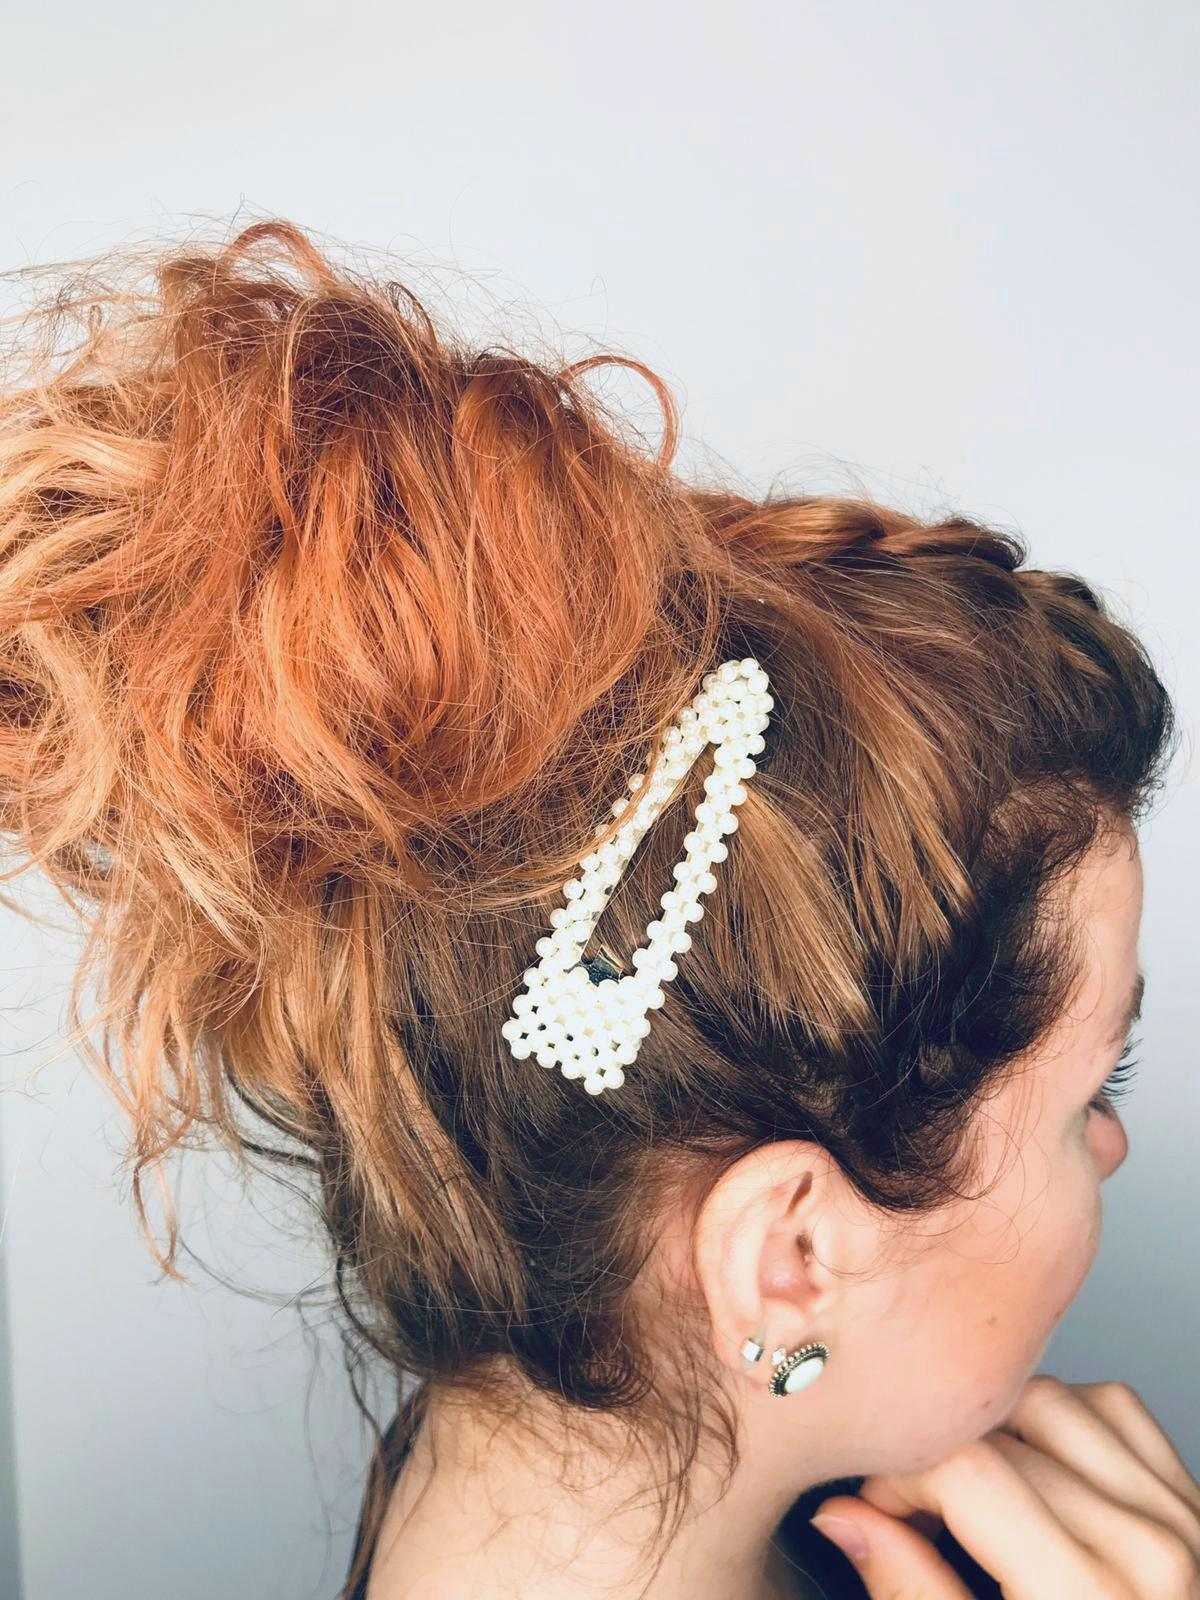 PIECES BY BONBON Erika hairclip Pieces by bonbon